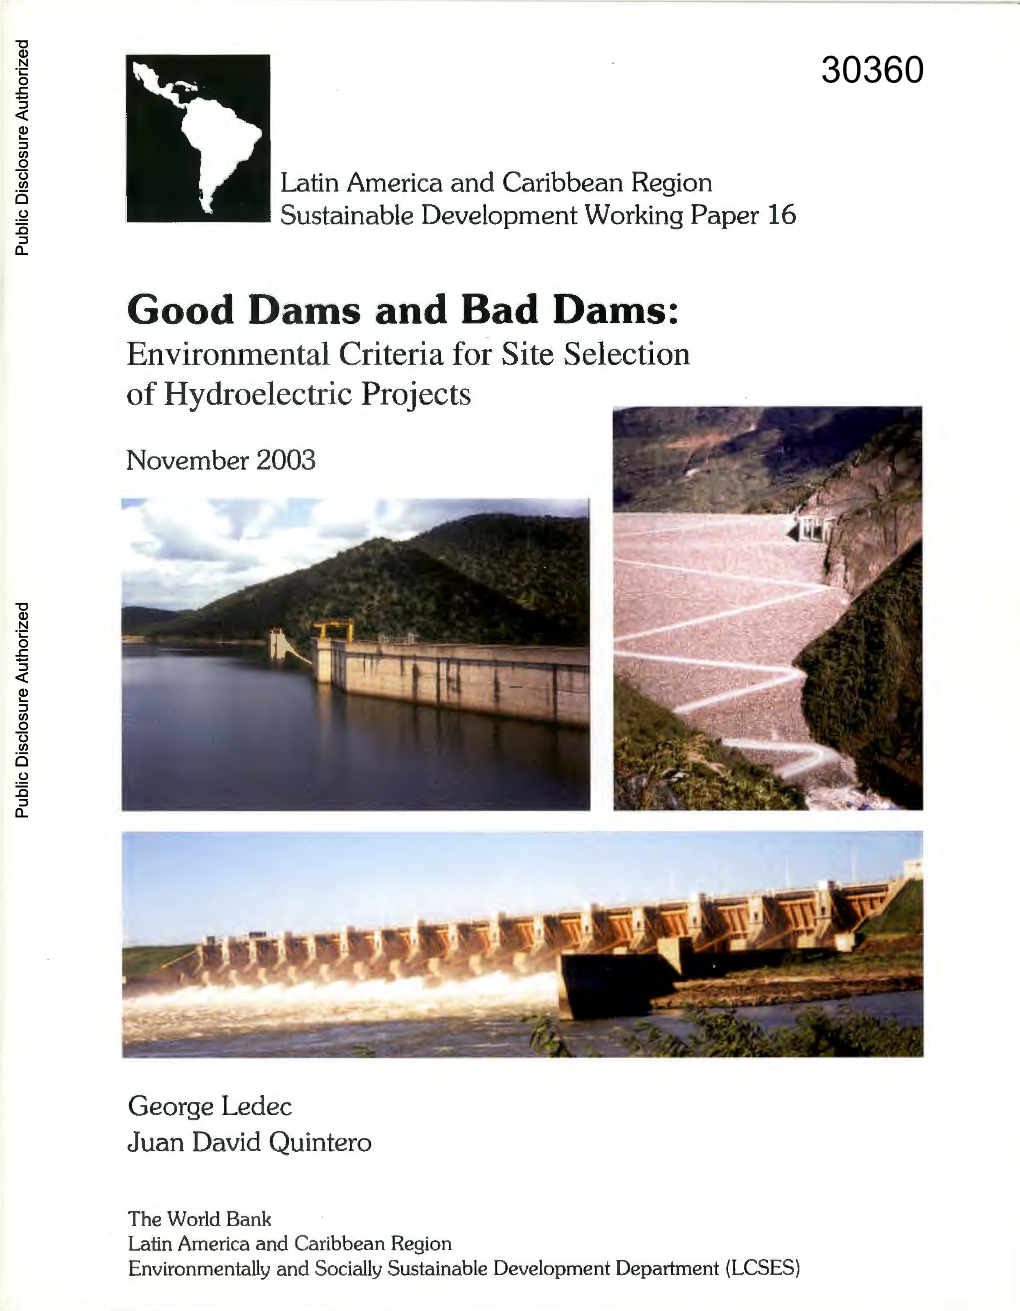 Good and Bad Dams